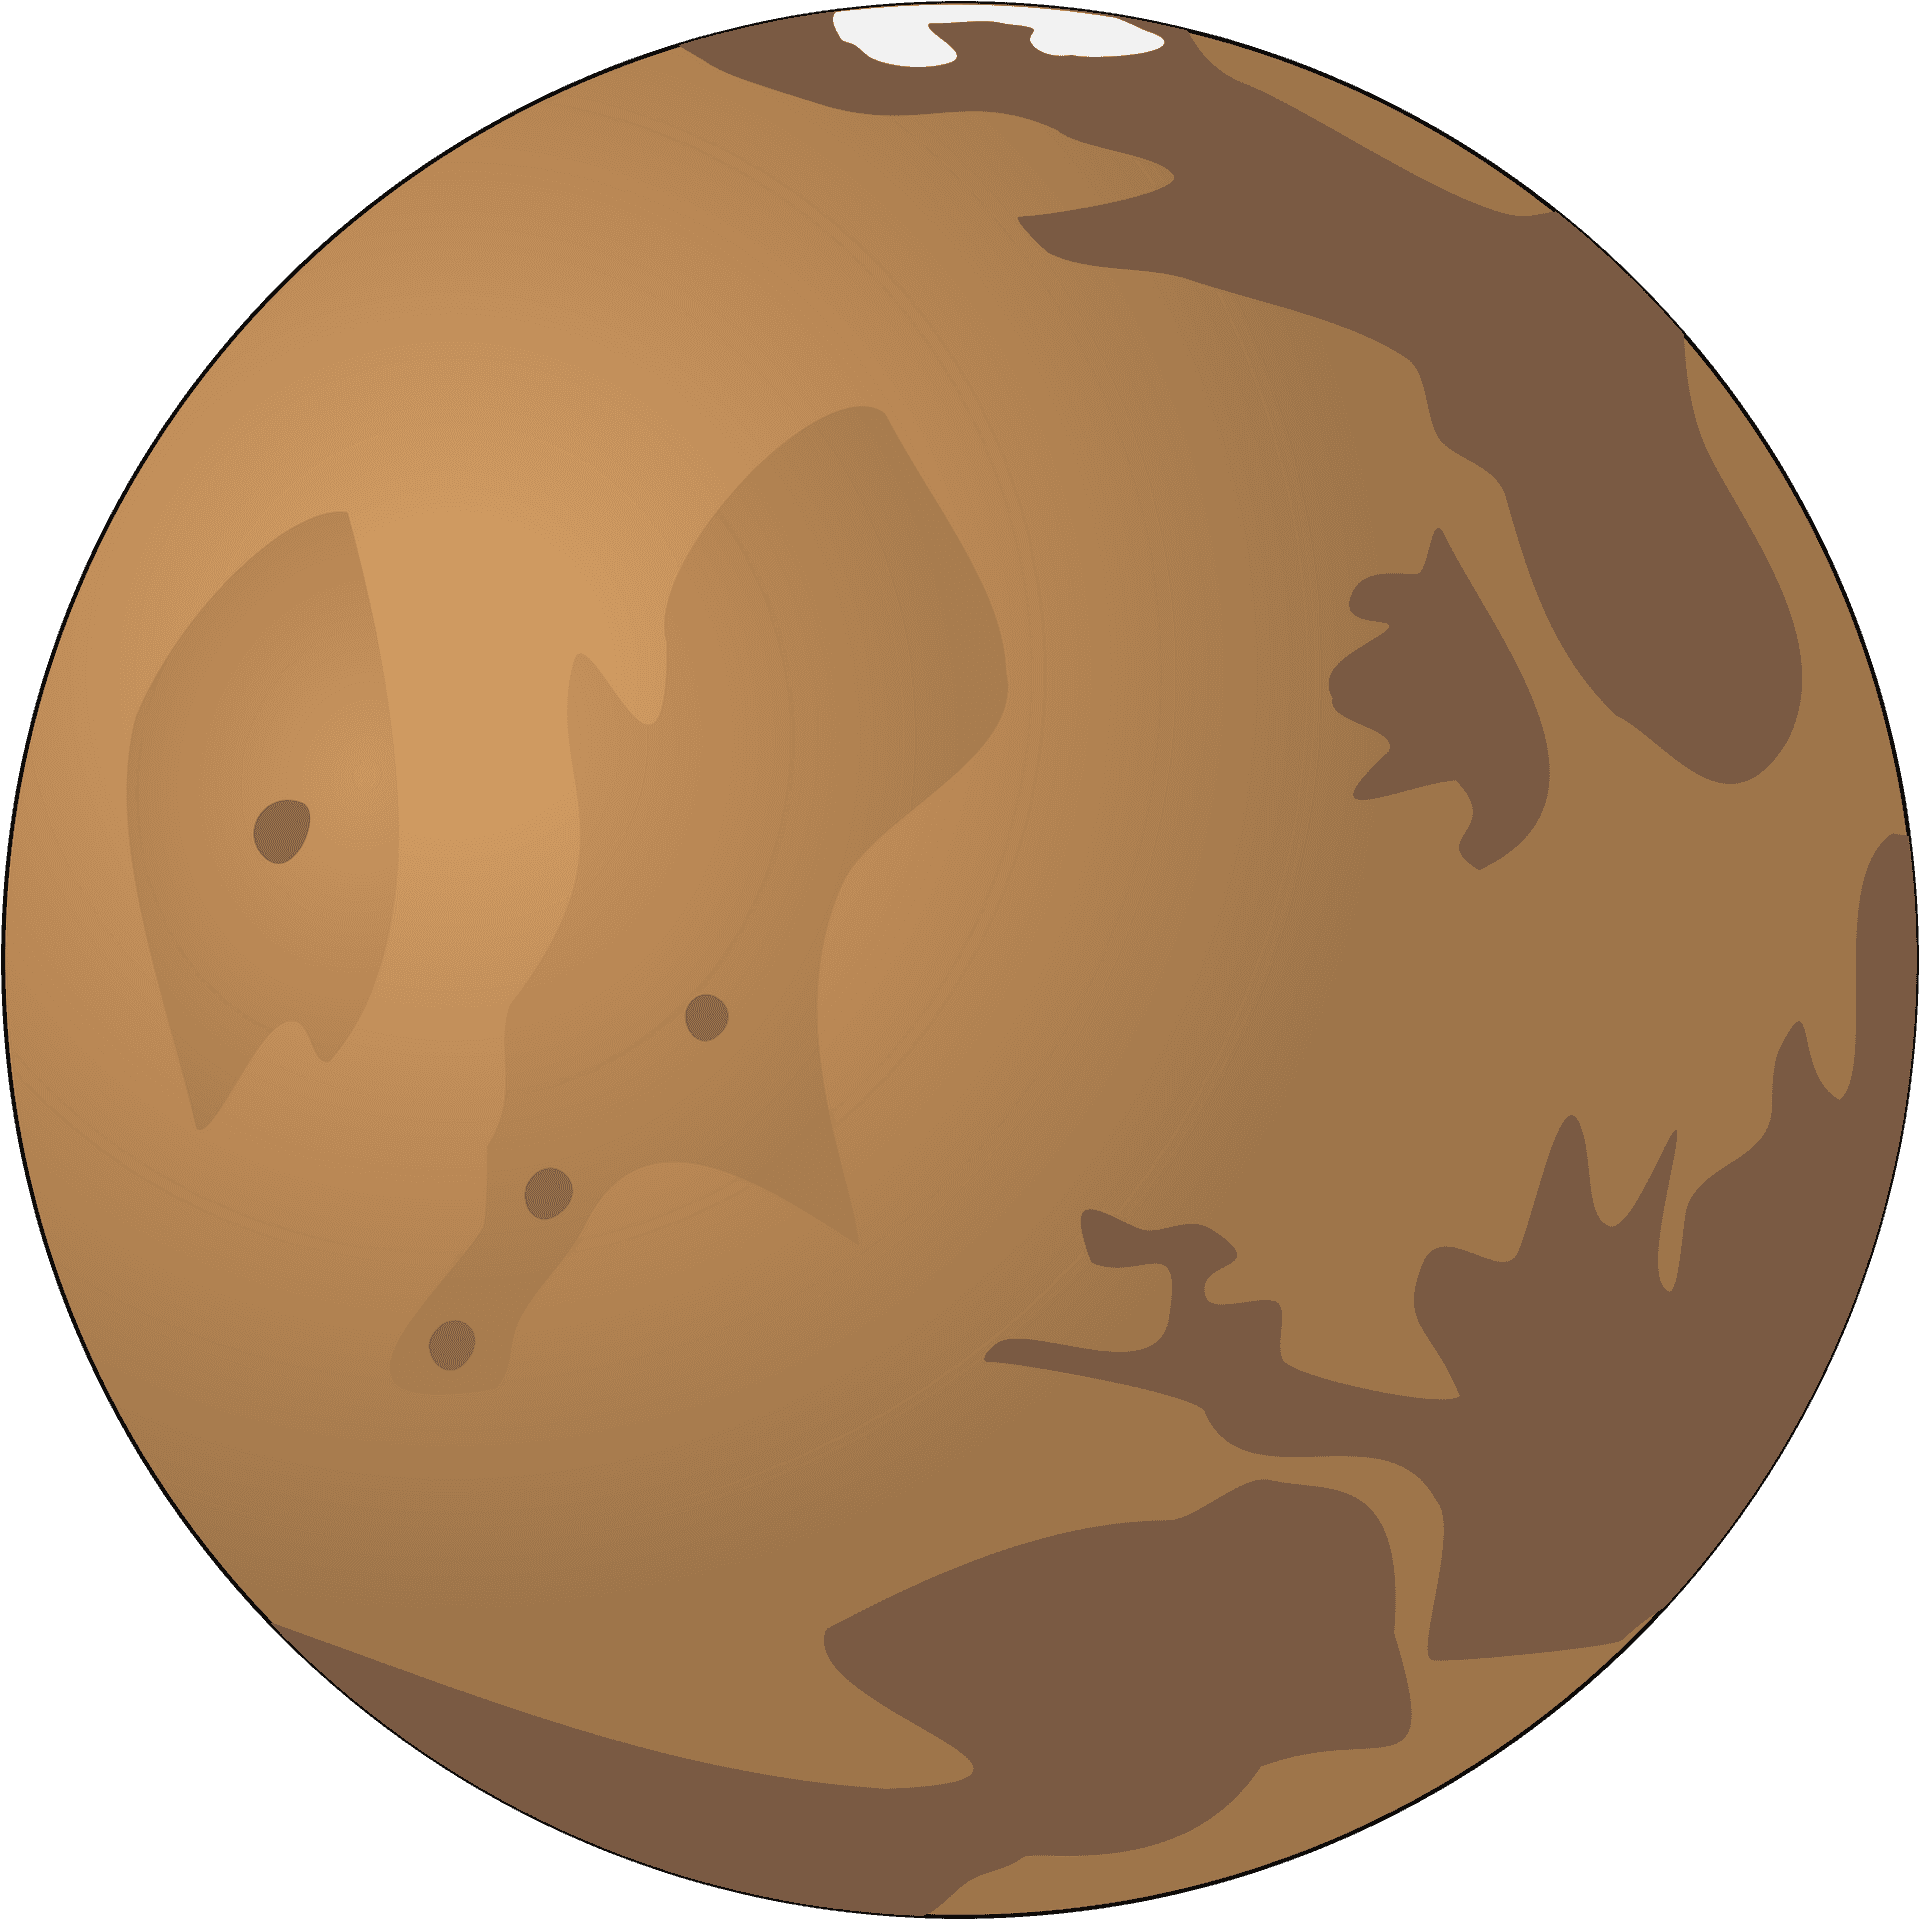 Mars Planet Illustration.png PNG image